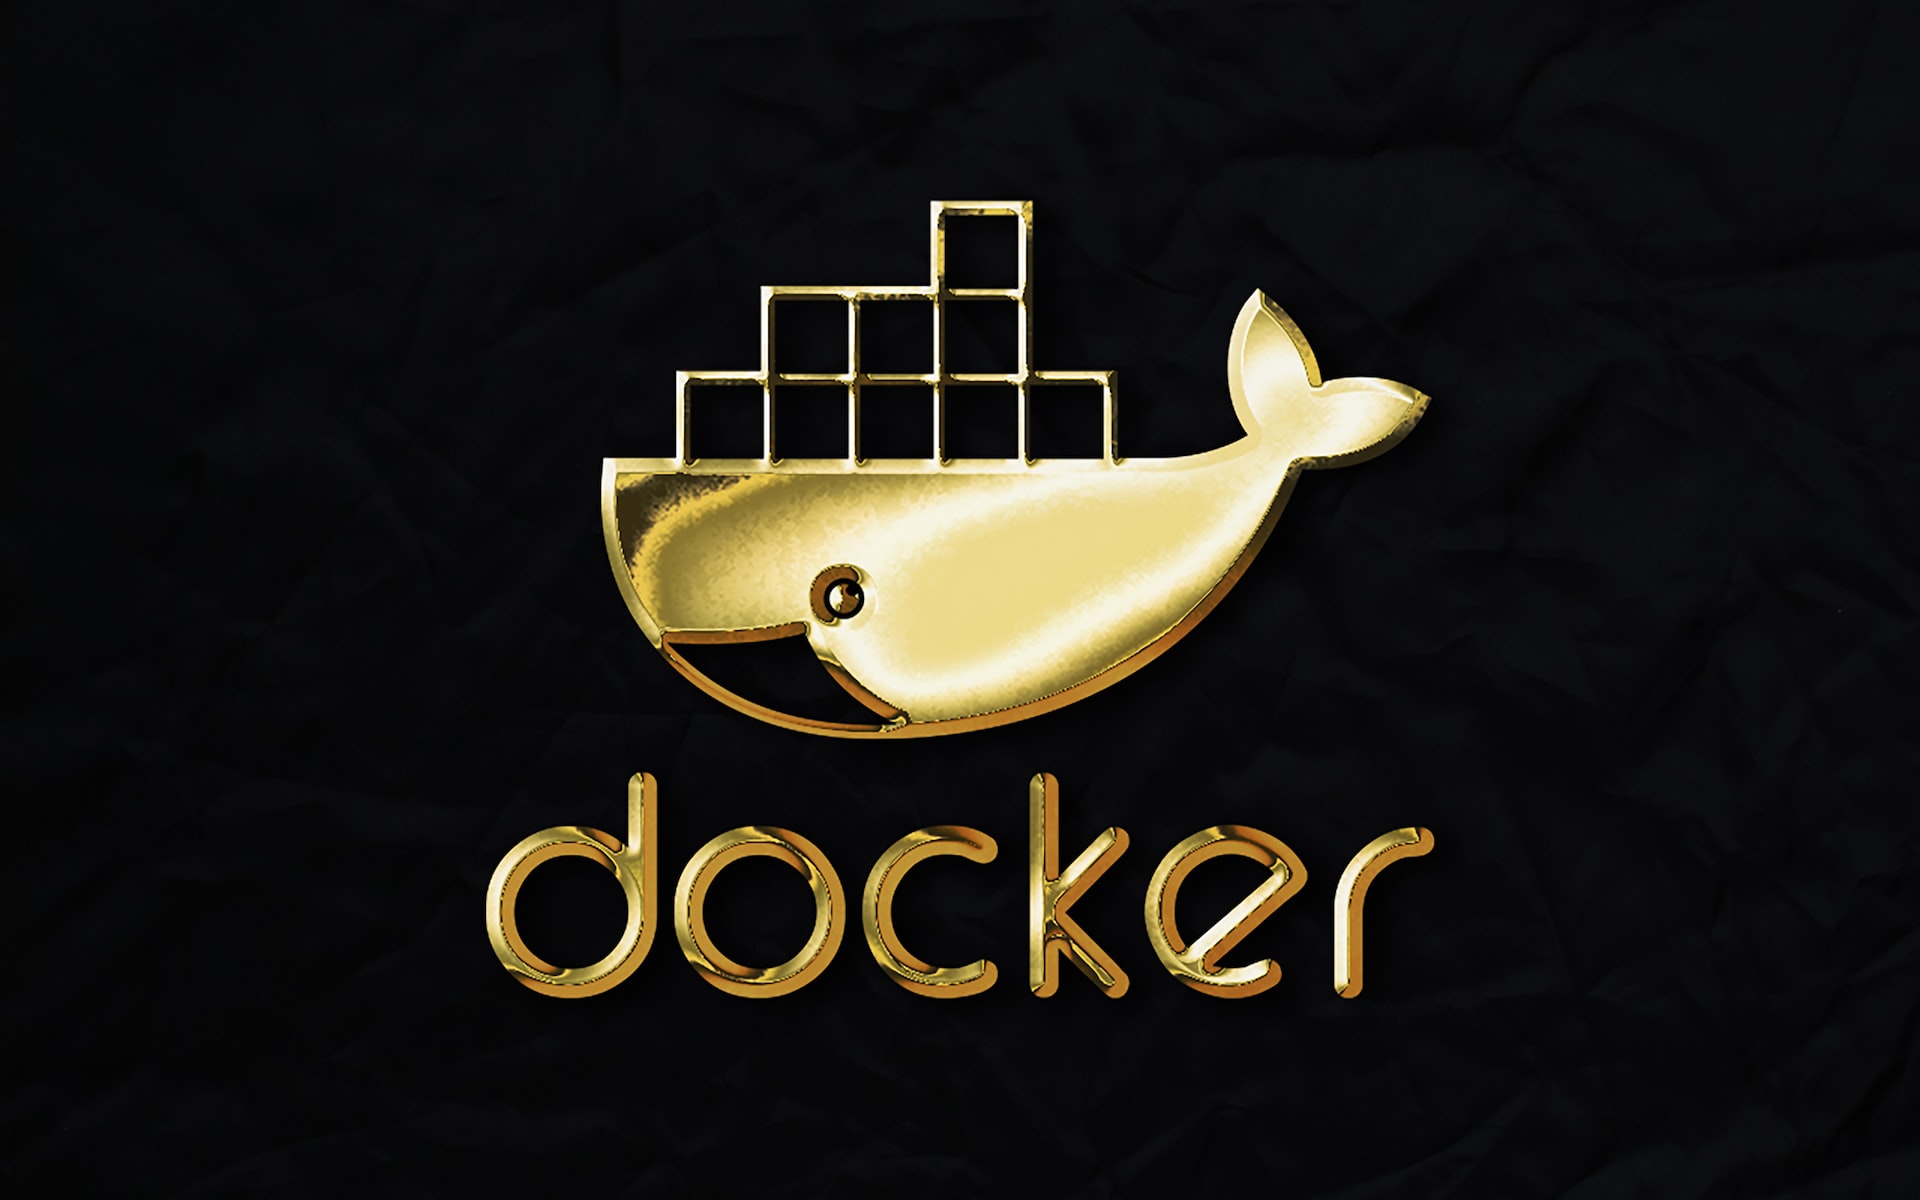 Mierz wysoko! Obsługa Dockera umiejętnością pożądaną przez pracodawców w branży IT